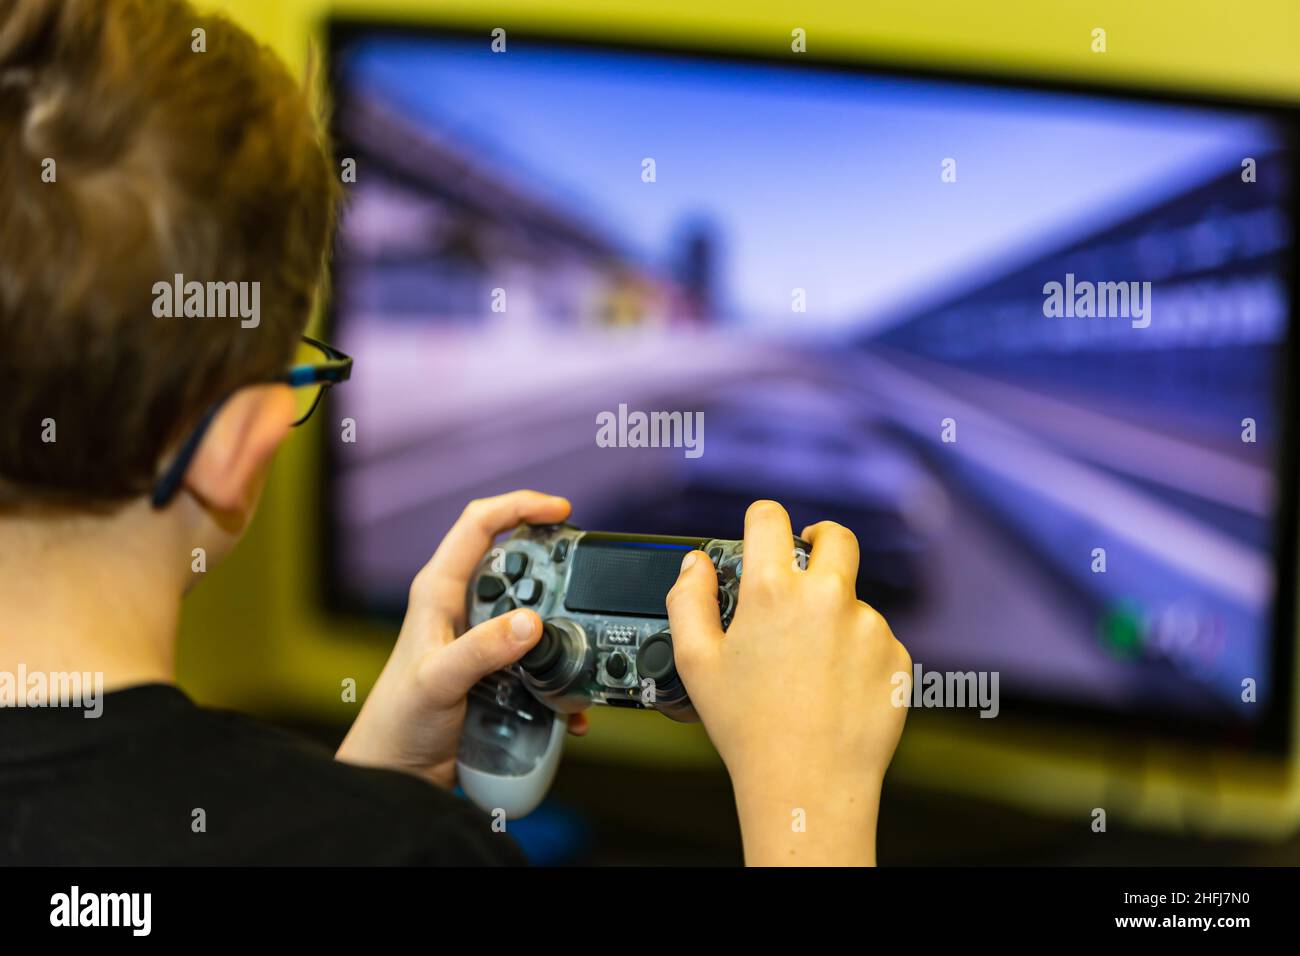 Main utilisant le contrôleur pour jouer à un jeu vidéo. Banque D'Images